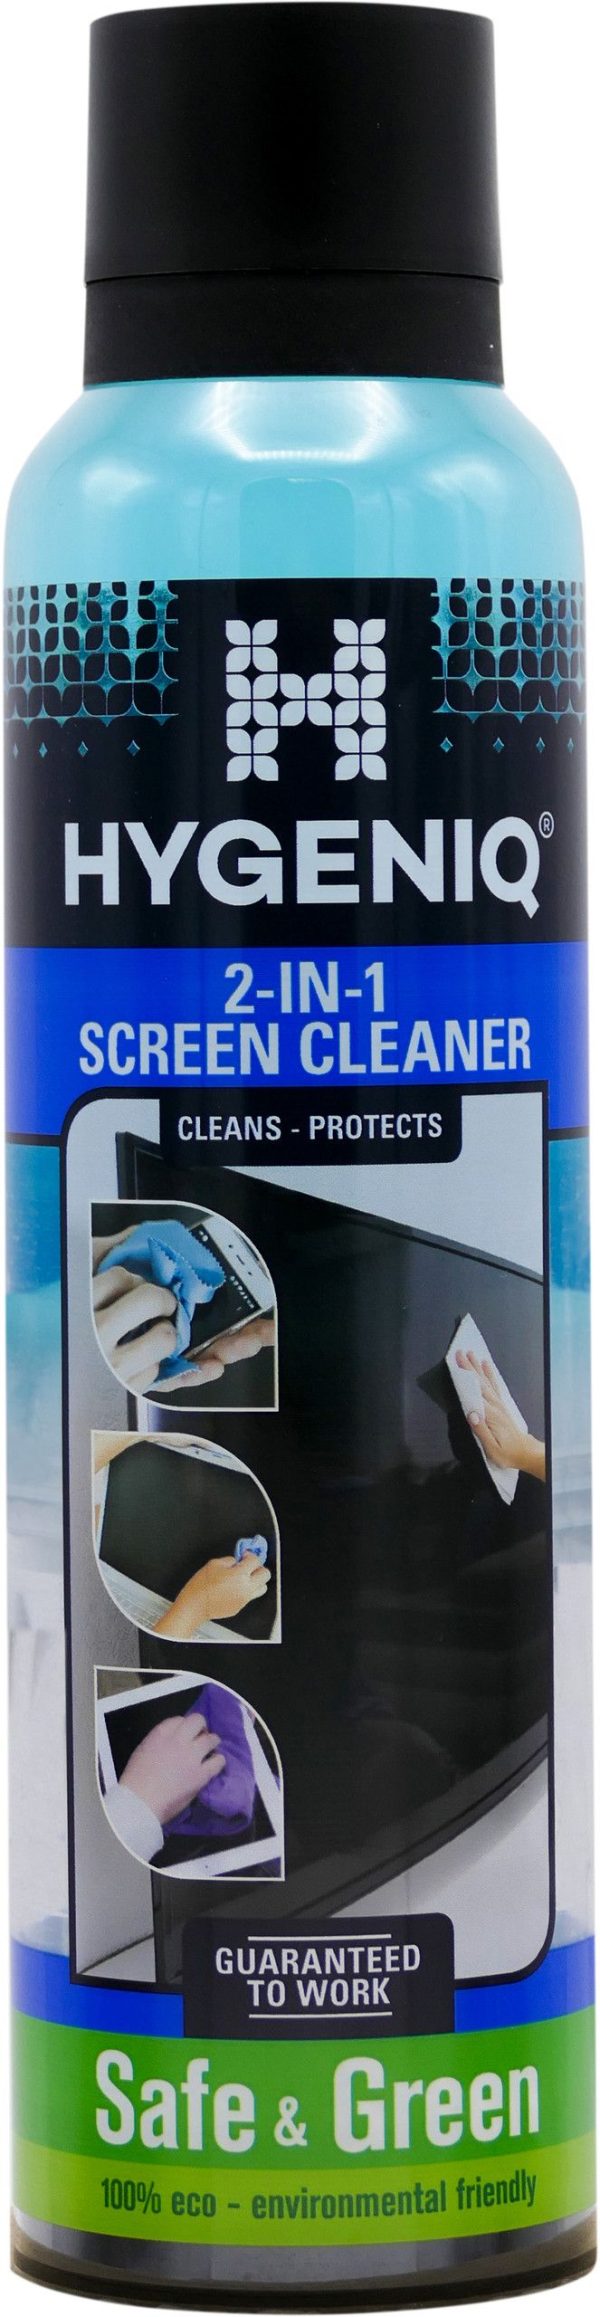 Hygeniq 2-in-1 Screen Cleaner 185 ml